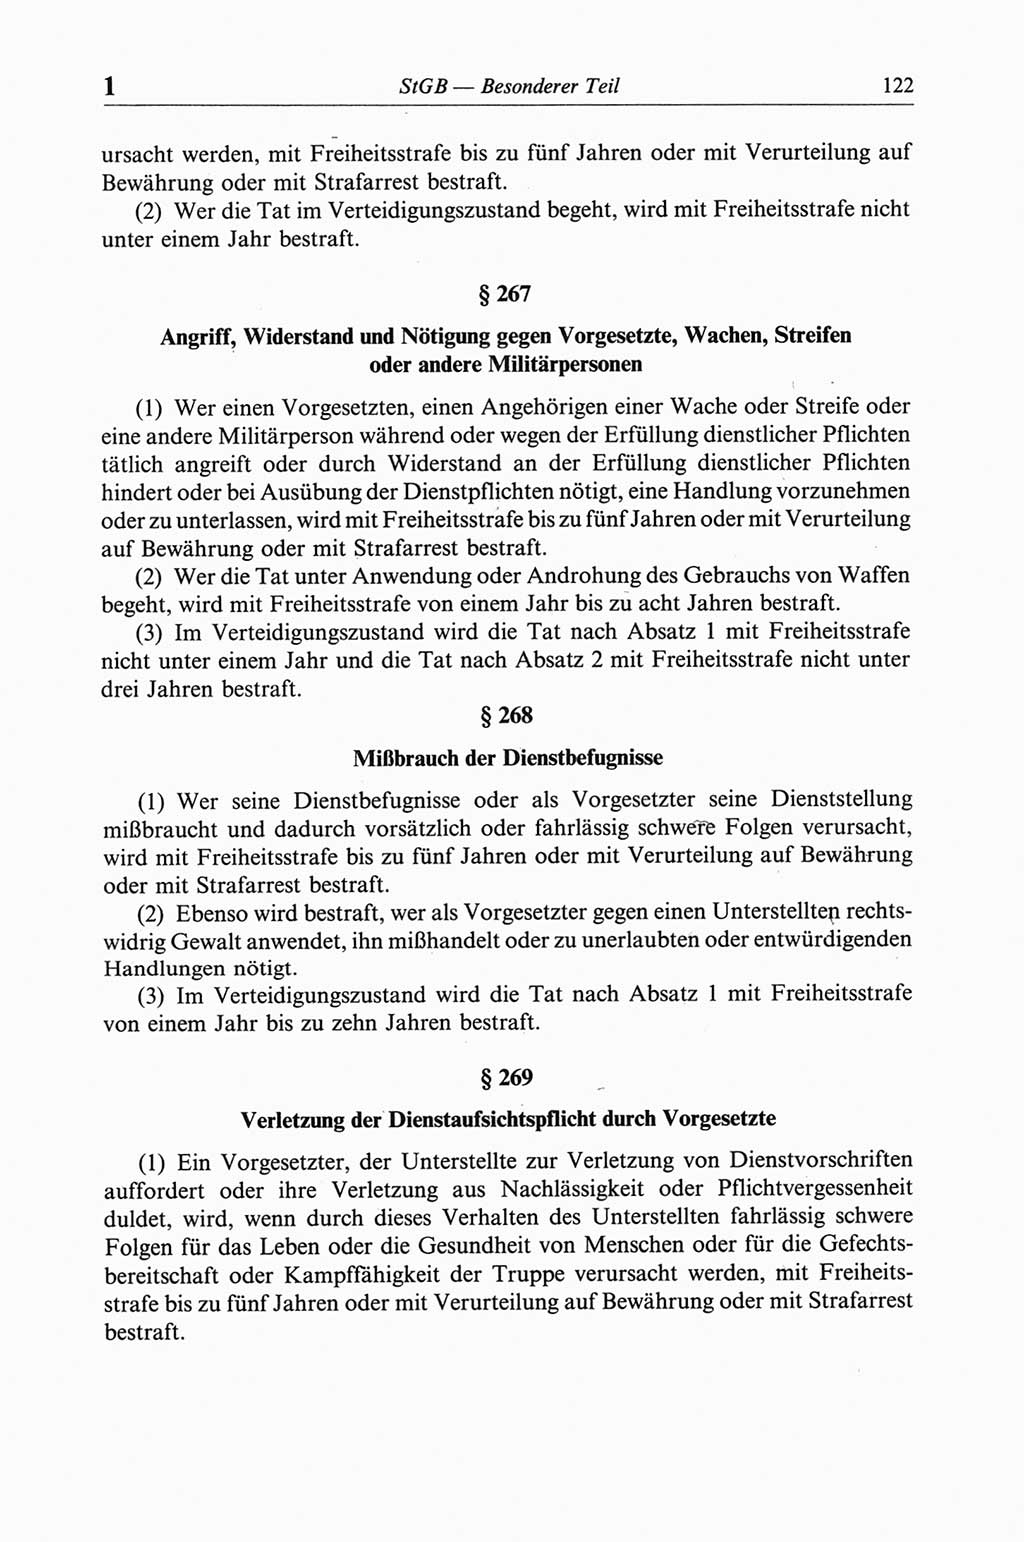 Strafgesetzbuch (StGB) der Deutschen Demokratischen Republik (DDR) und angrenzende Gesetze und Bestimmungen 1968, Seite 122 (StGB Ges. Best. DDR 1968, S. 122)